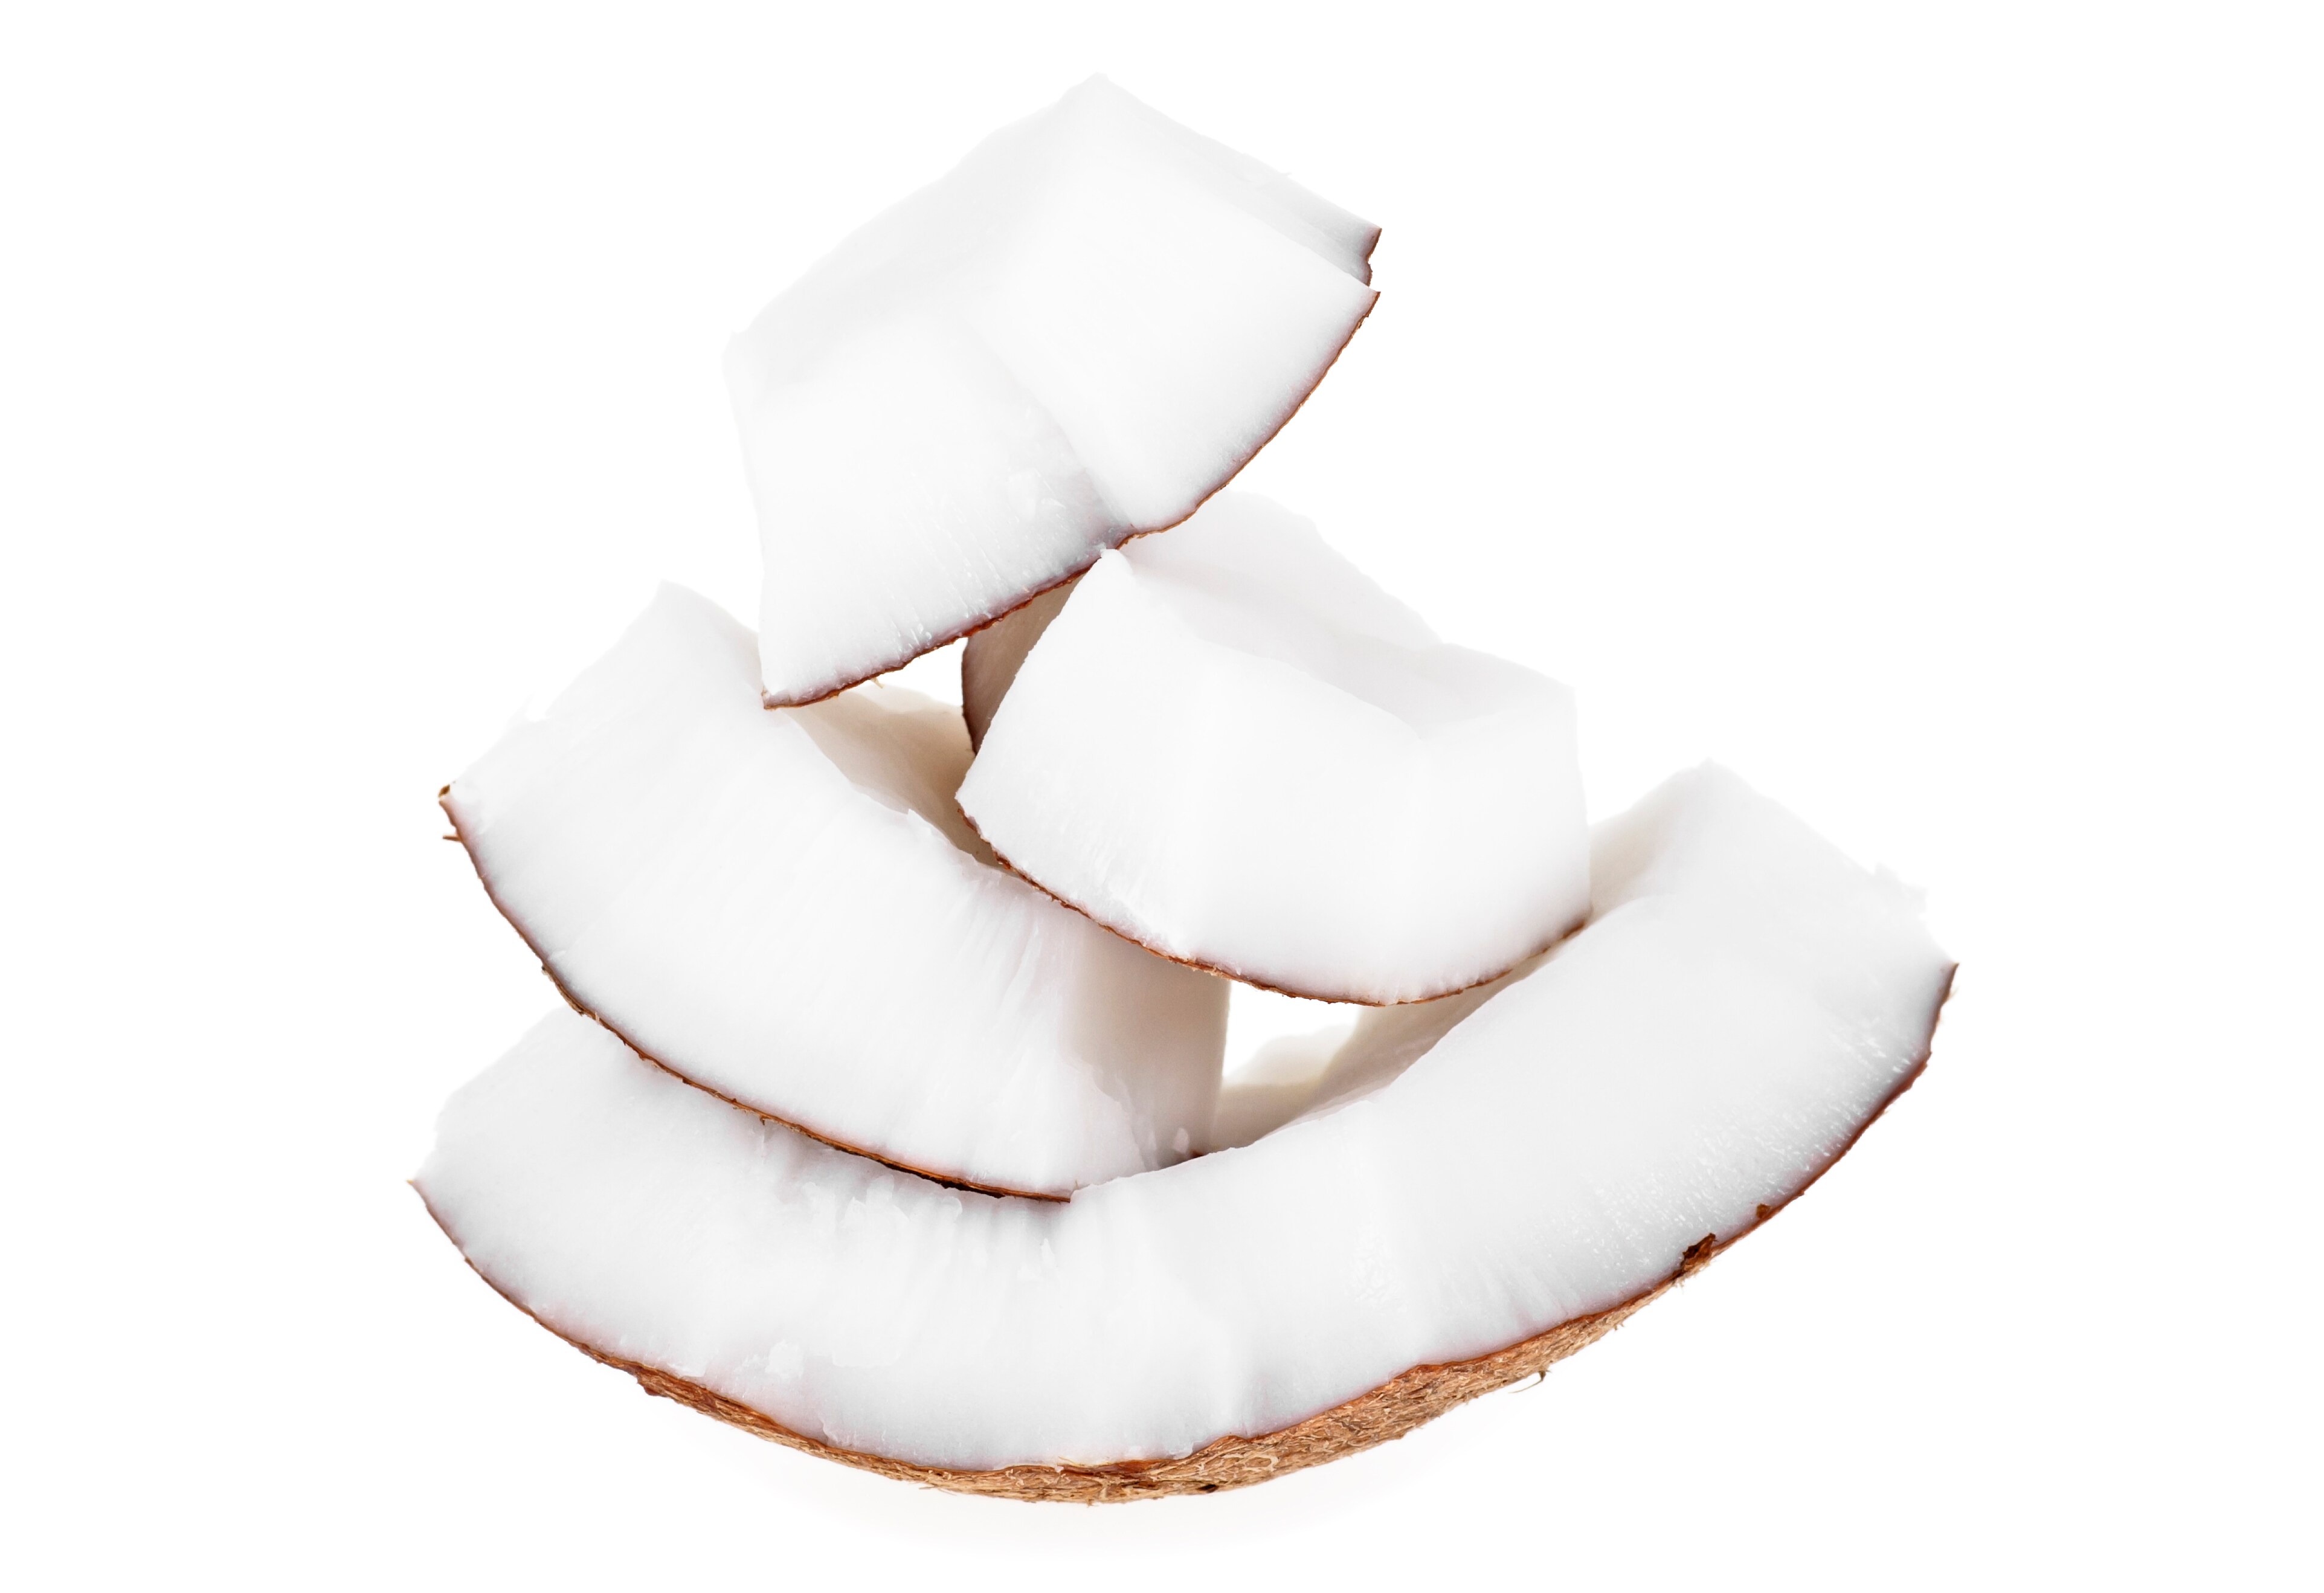 Fragrant, white coconut